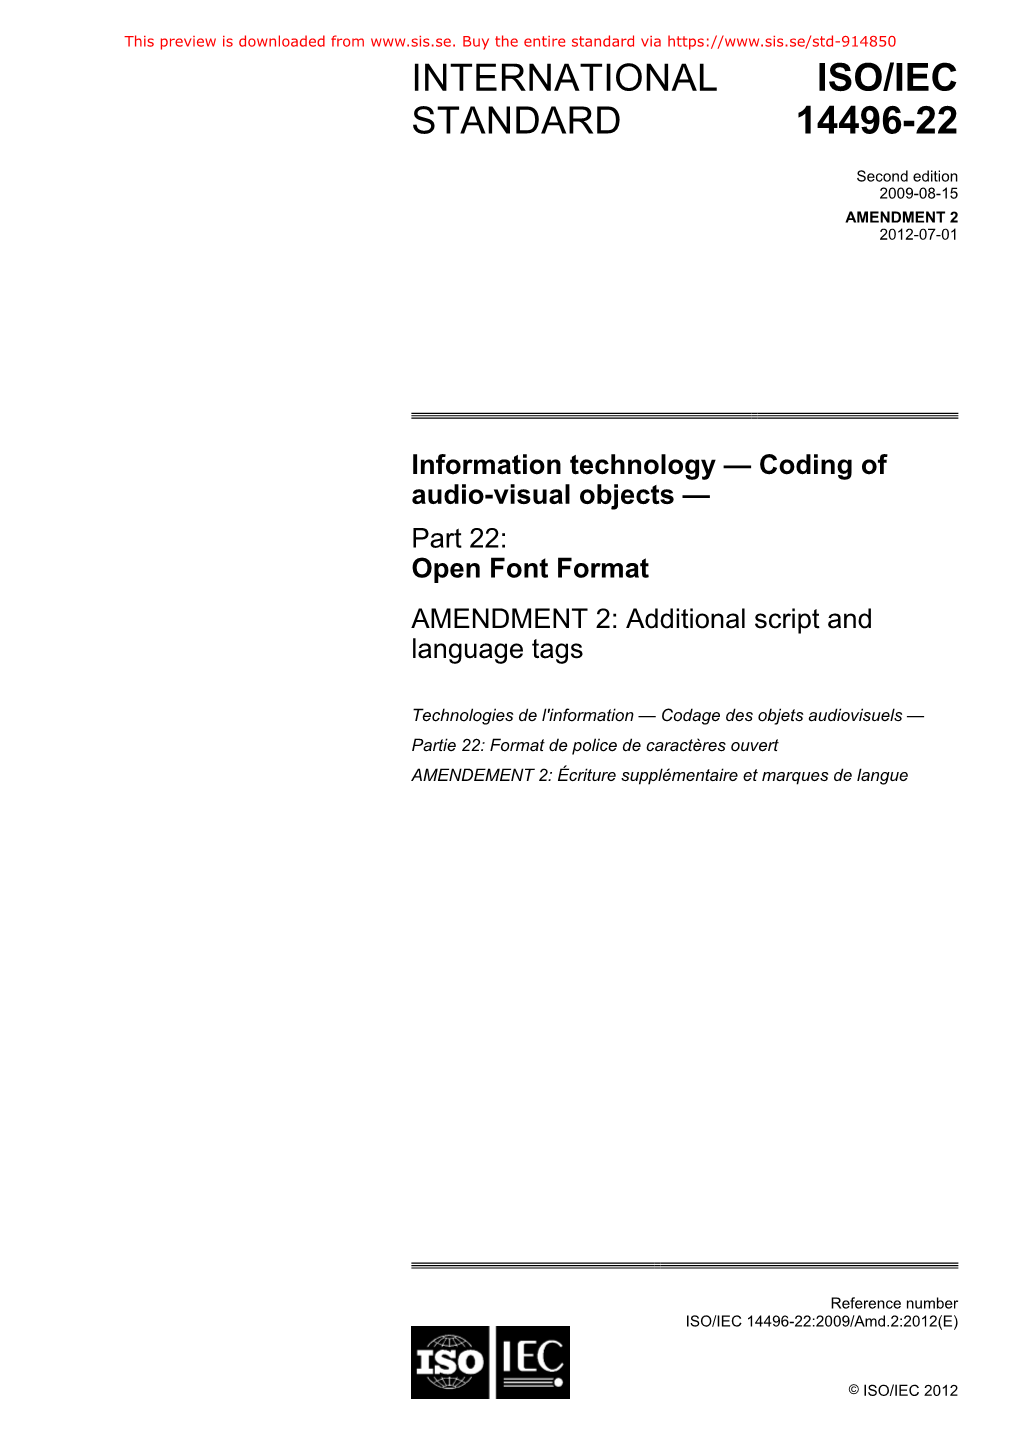 ISO/IEC 14496-22:2009/Amd.2:2012(E)